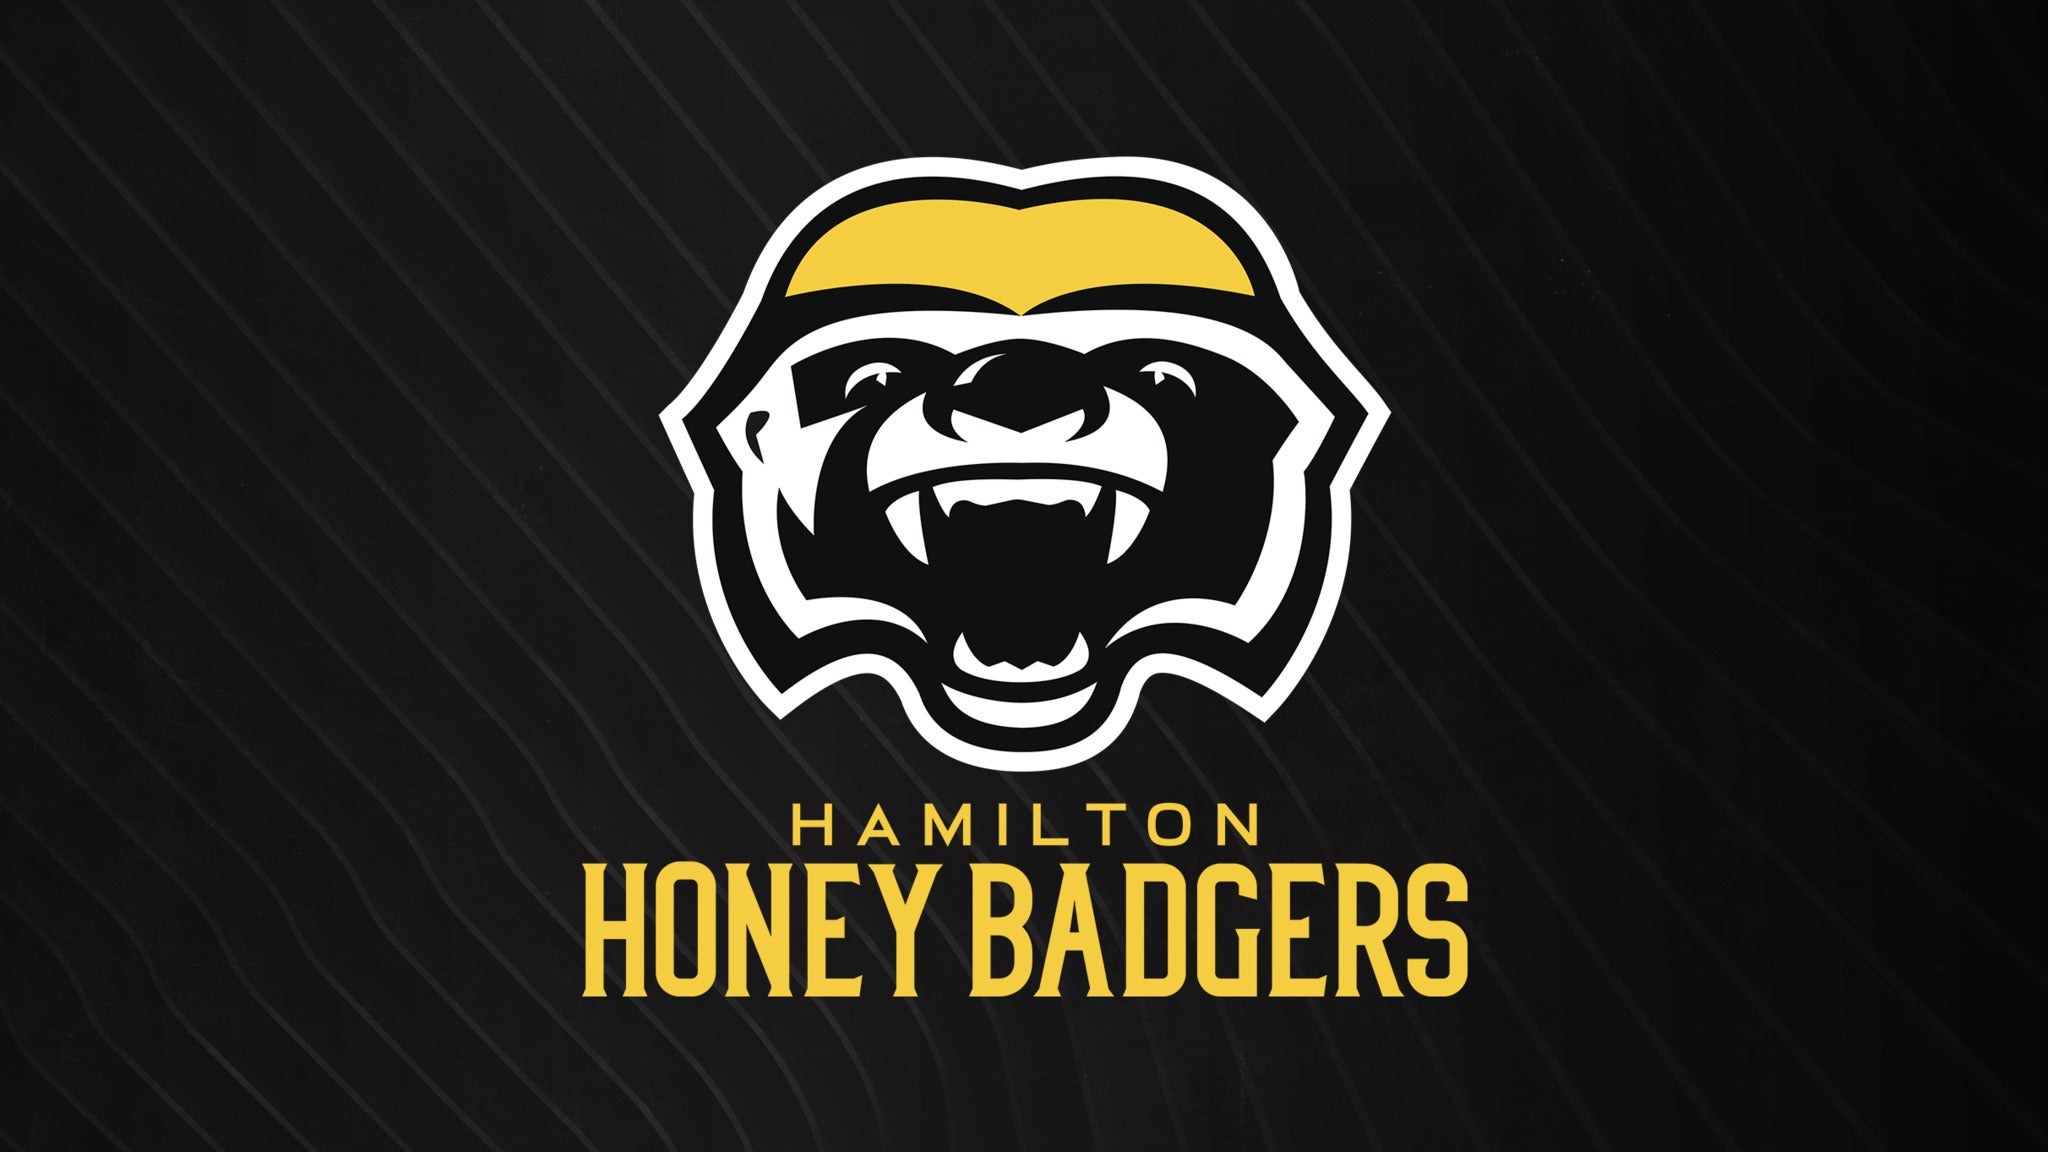 Hamilton Honey Badgers vs. Niagara River Lions in Hamilton promo photo for Presto  presale offer code